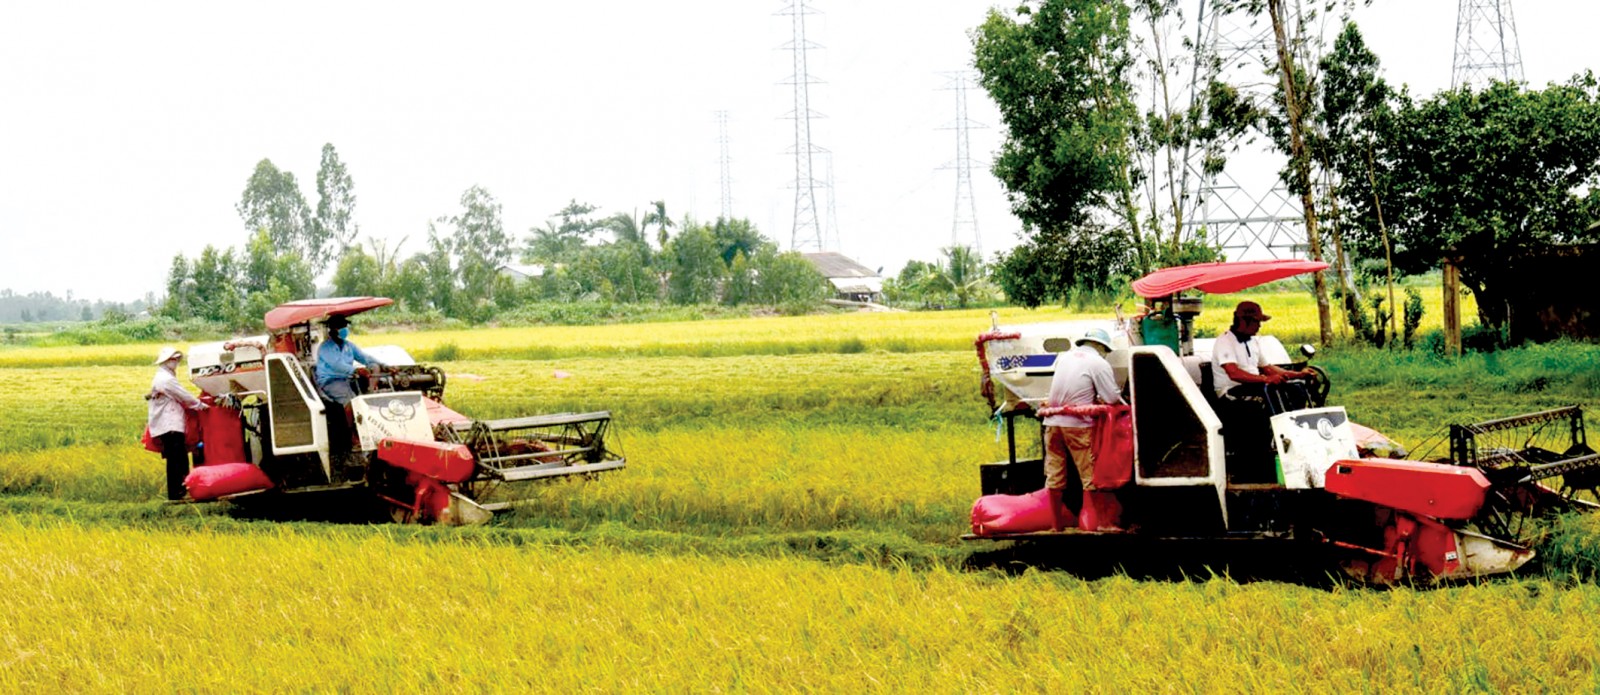 Thu hoạch lúa tại cánh đồng lớn ở xã Mỹ Chánh, huyện Châu Thành. Ảnh: Sơ Ma Lai